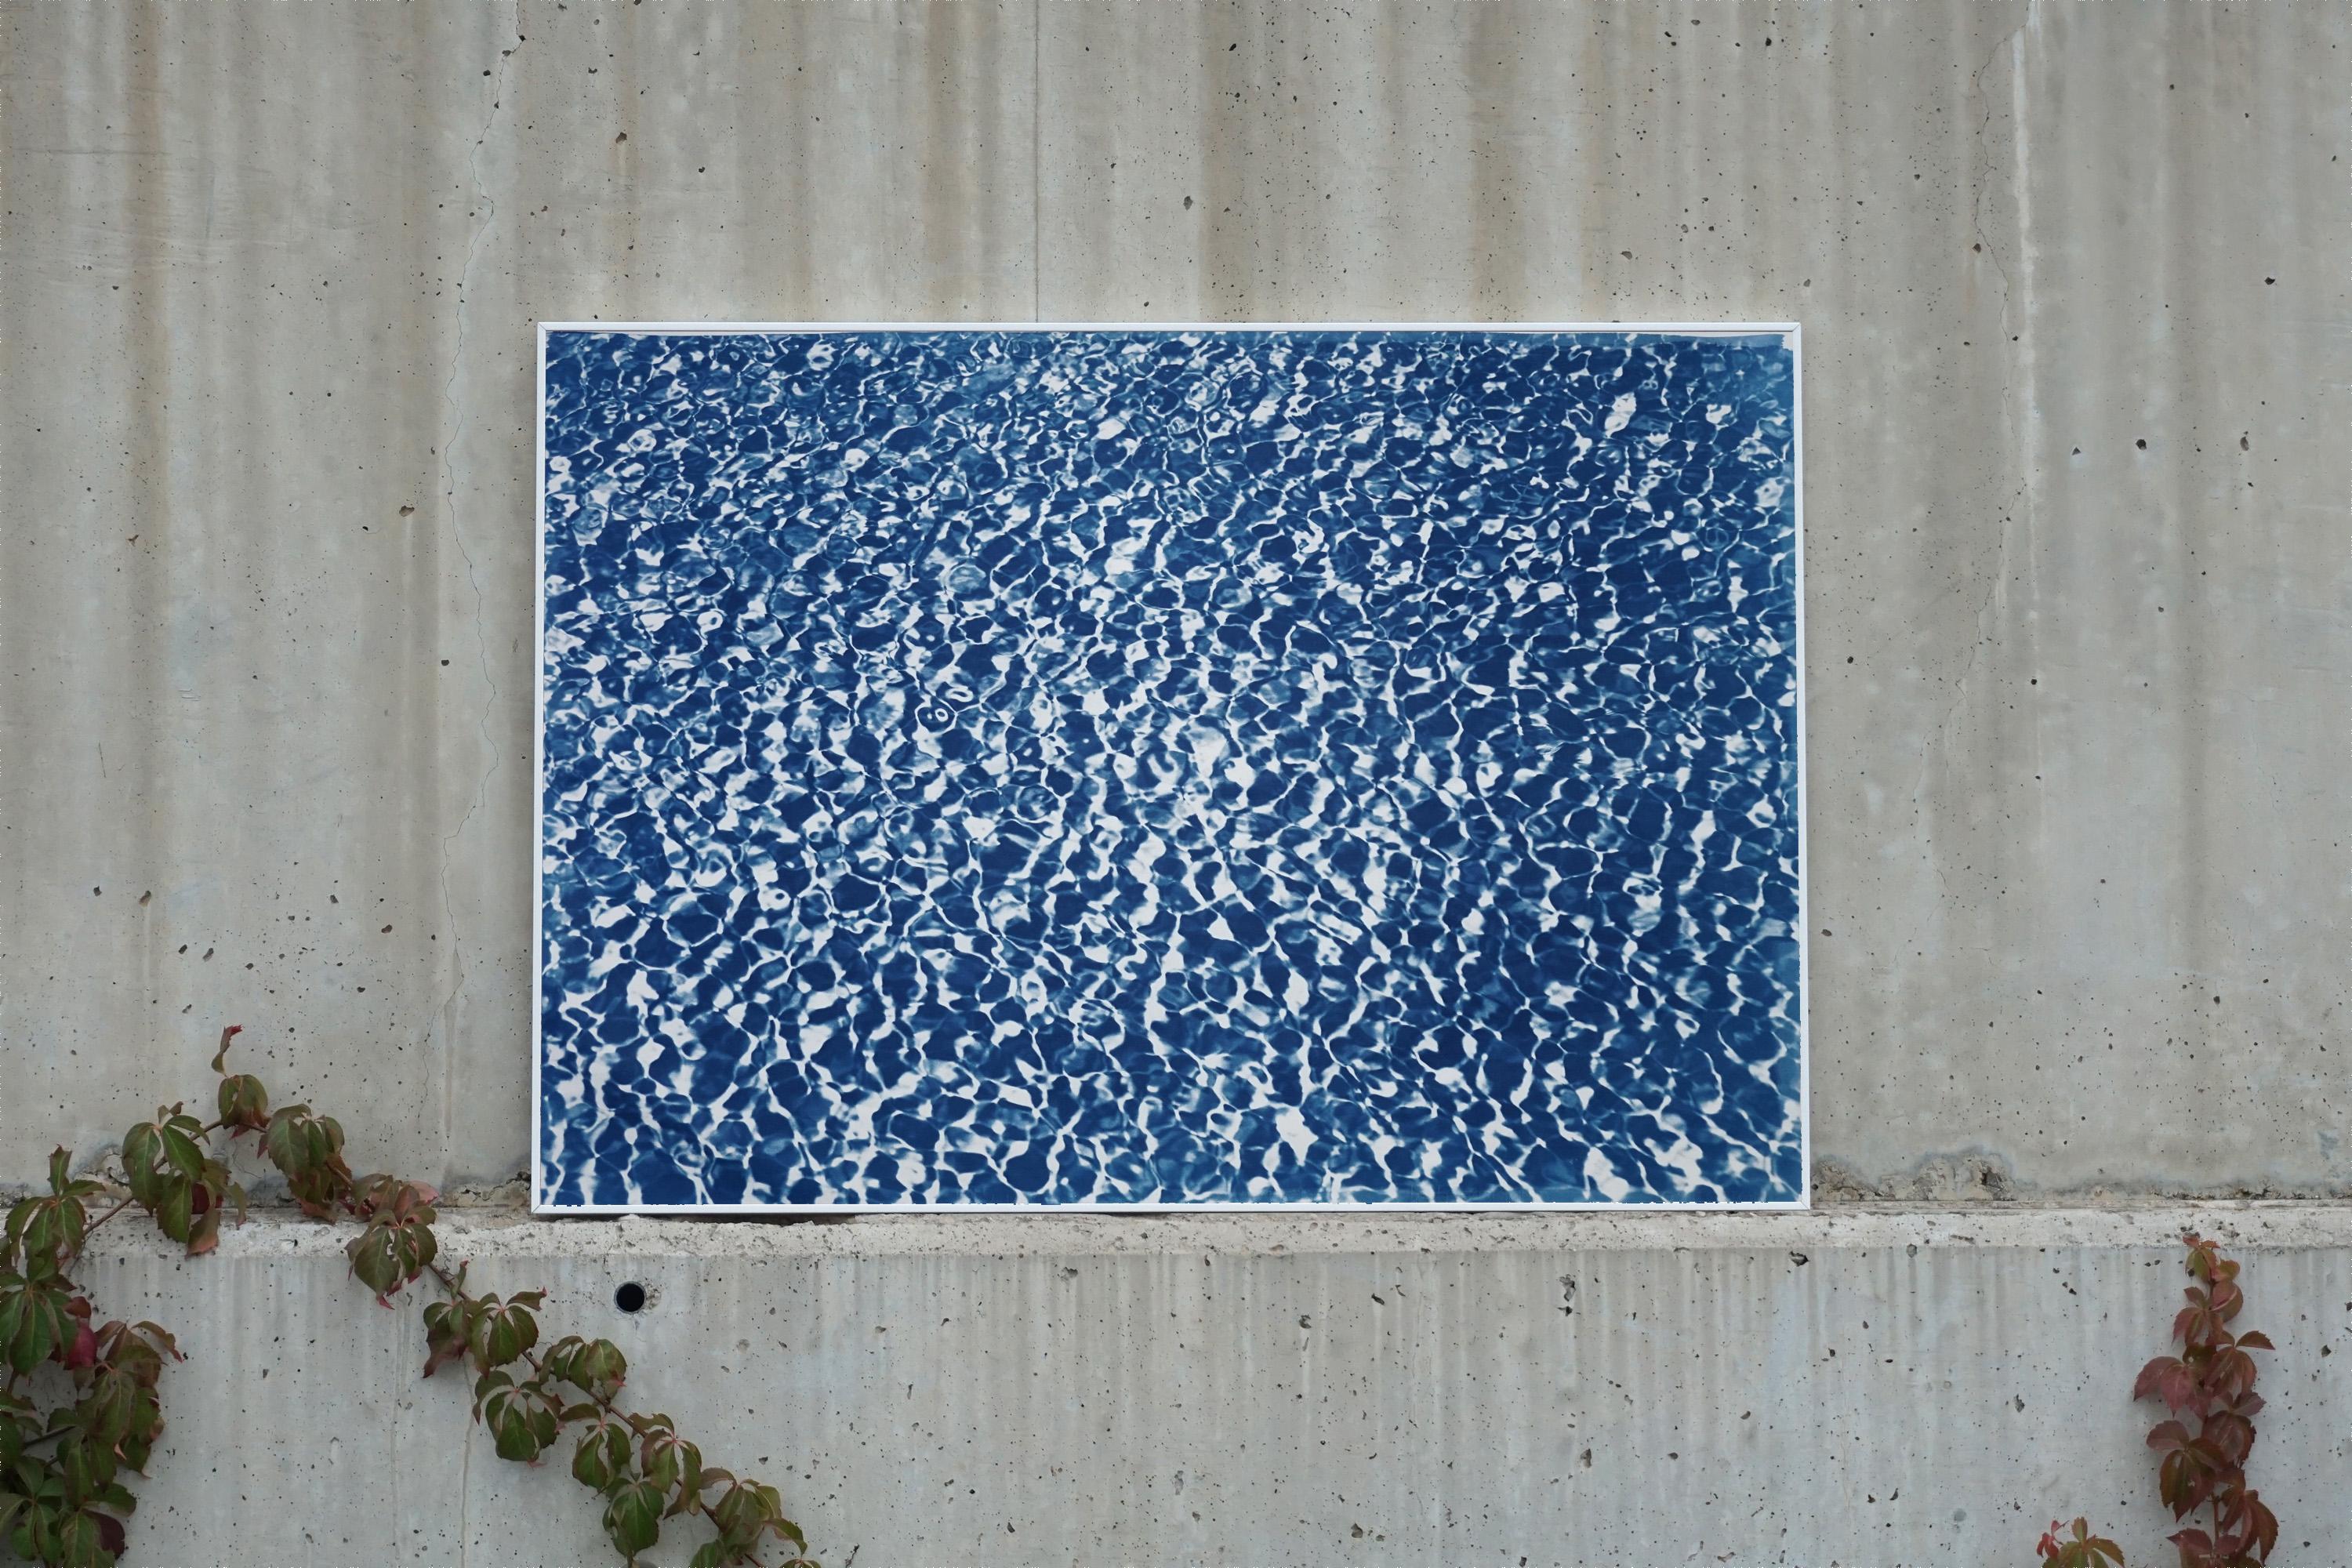 Reflections d'eau de piscine infinies, motif bleu et blanc, imprimé cyanotype fait à la main - Print de Kind of Cyan